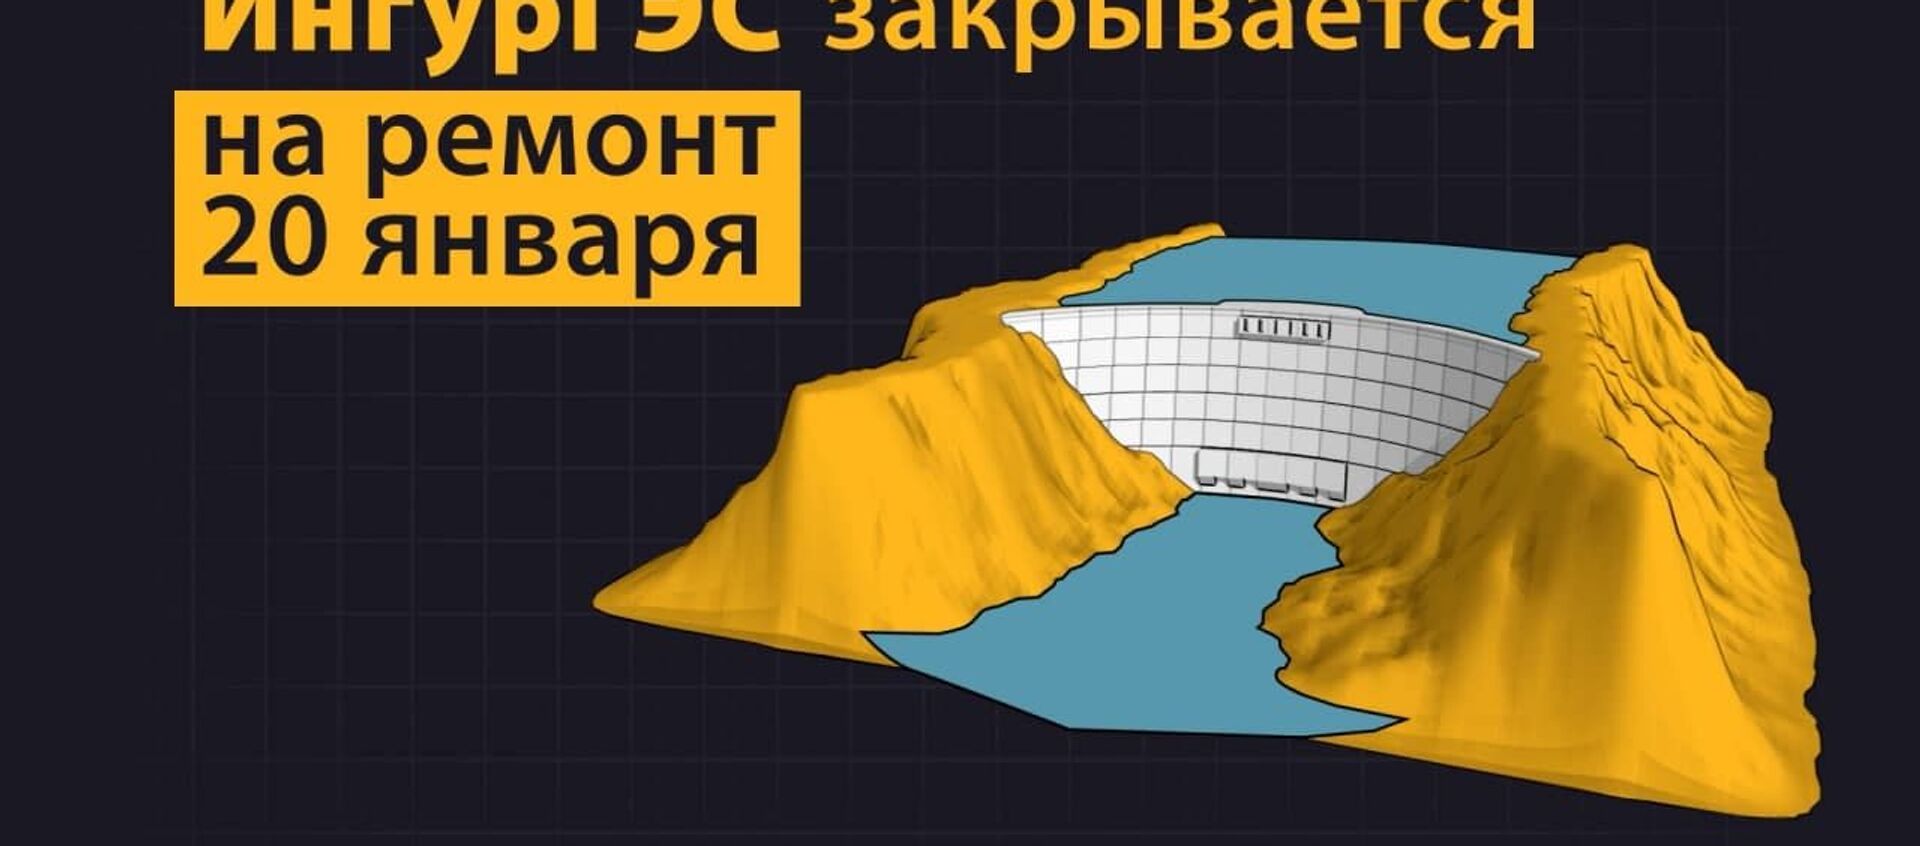 Стратегический тоннель: ИнгурГЭС закрывается на ремонт - Sputnik Абхазия, 1920, 20.01.2021